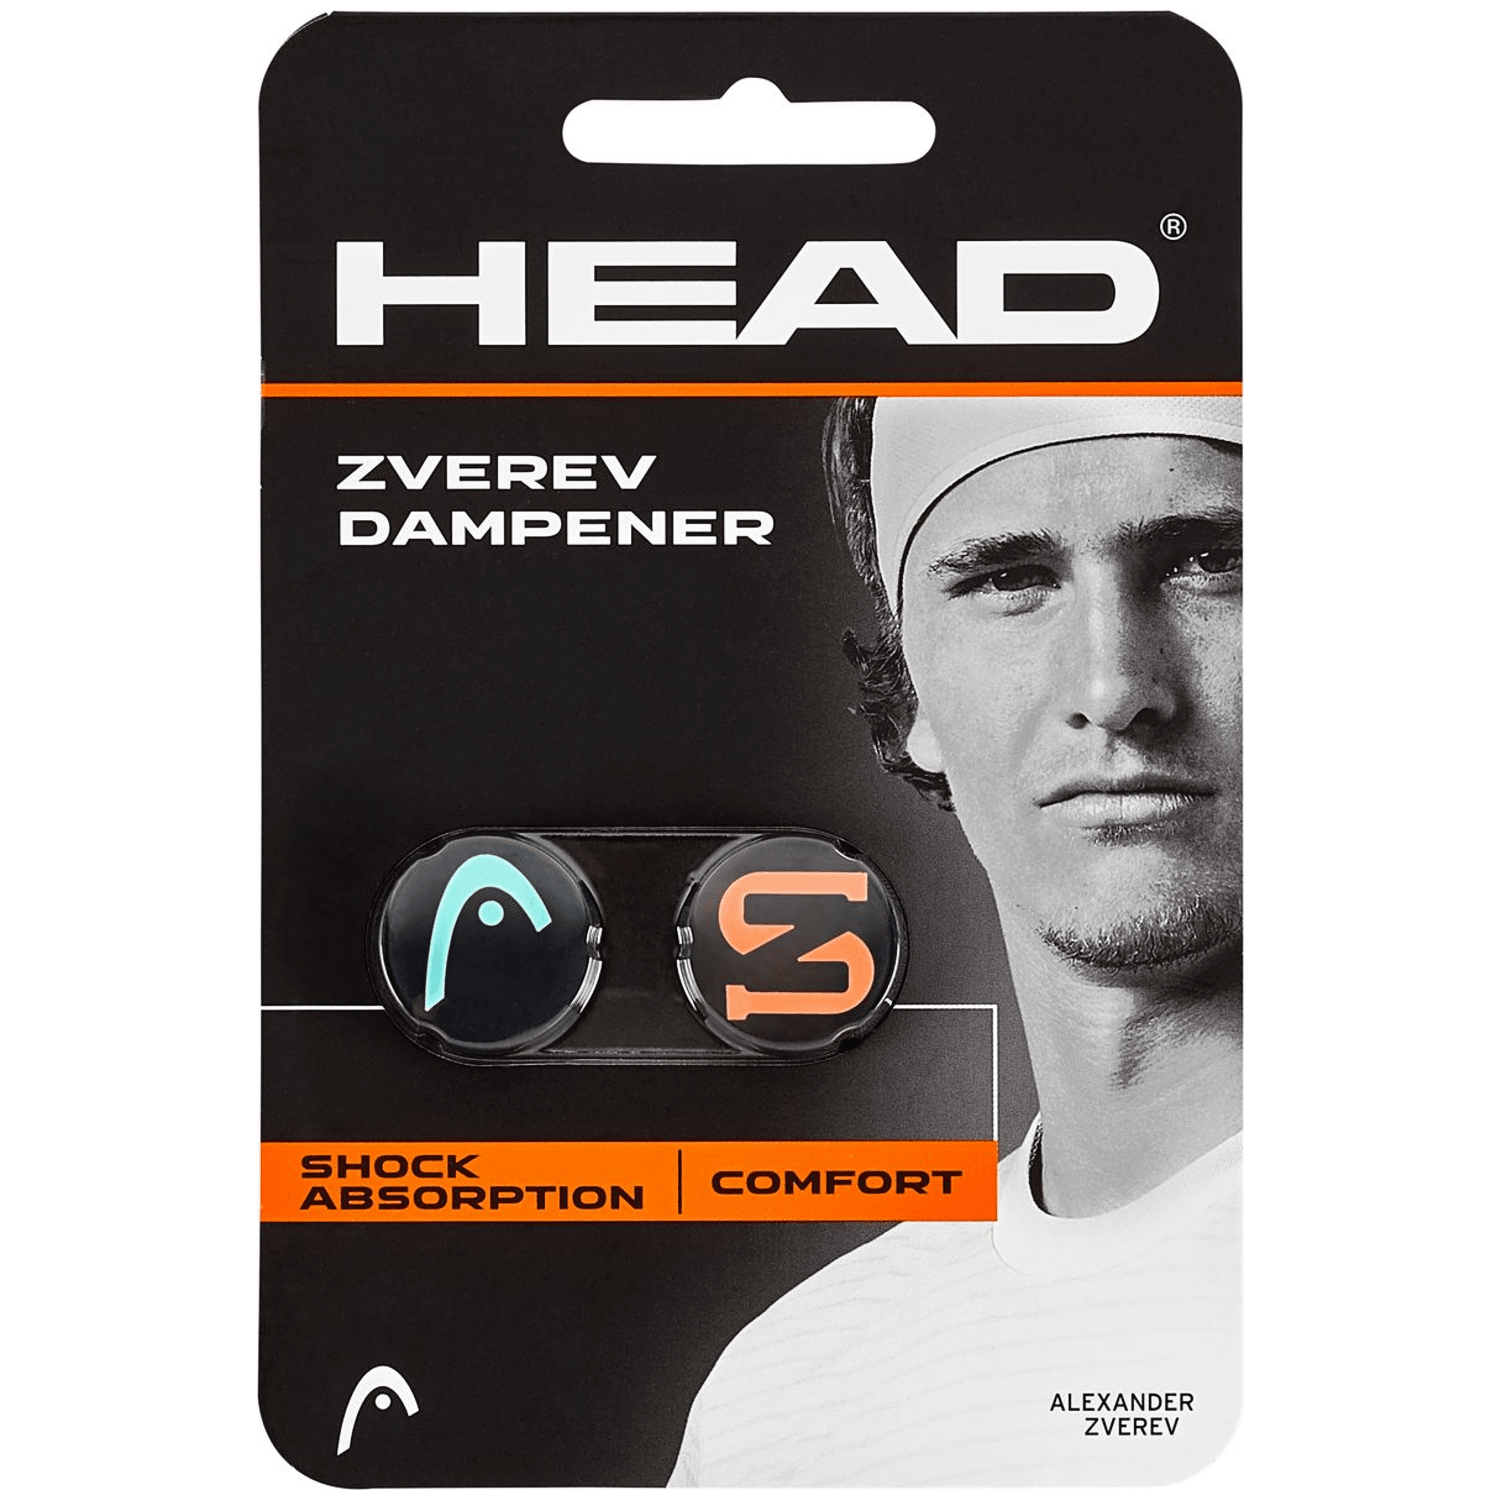 Head Zverev Dampener 2 Pcs Pack